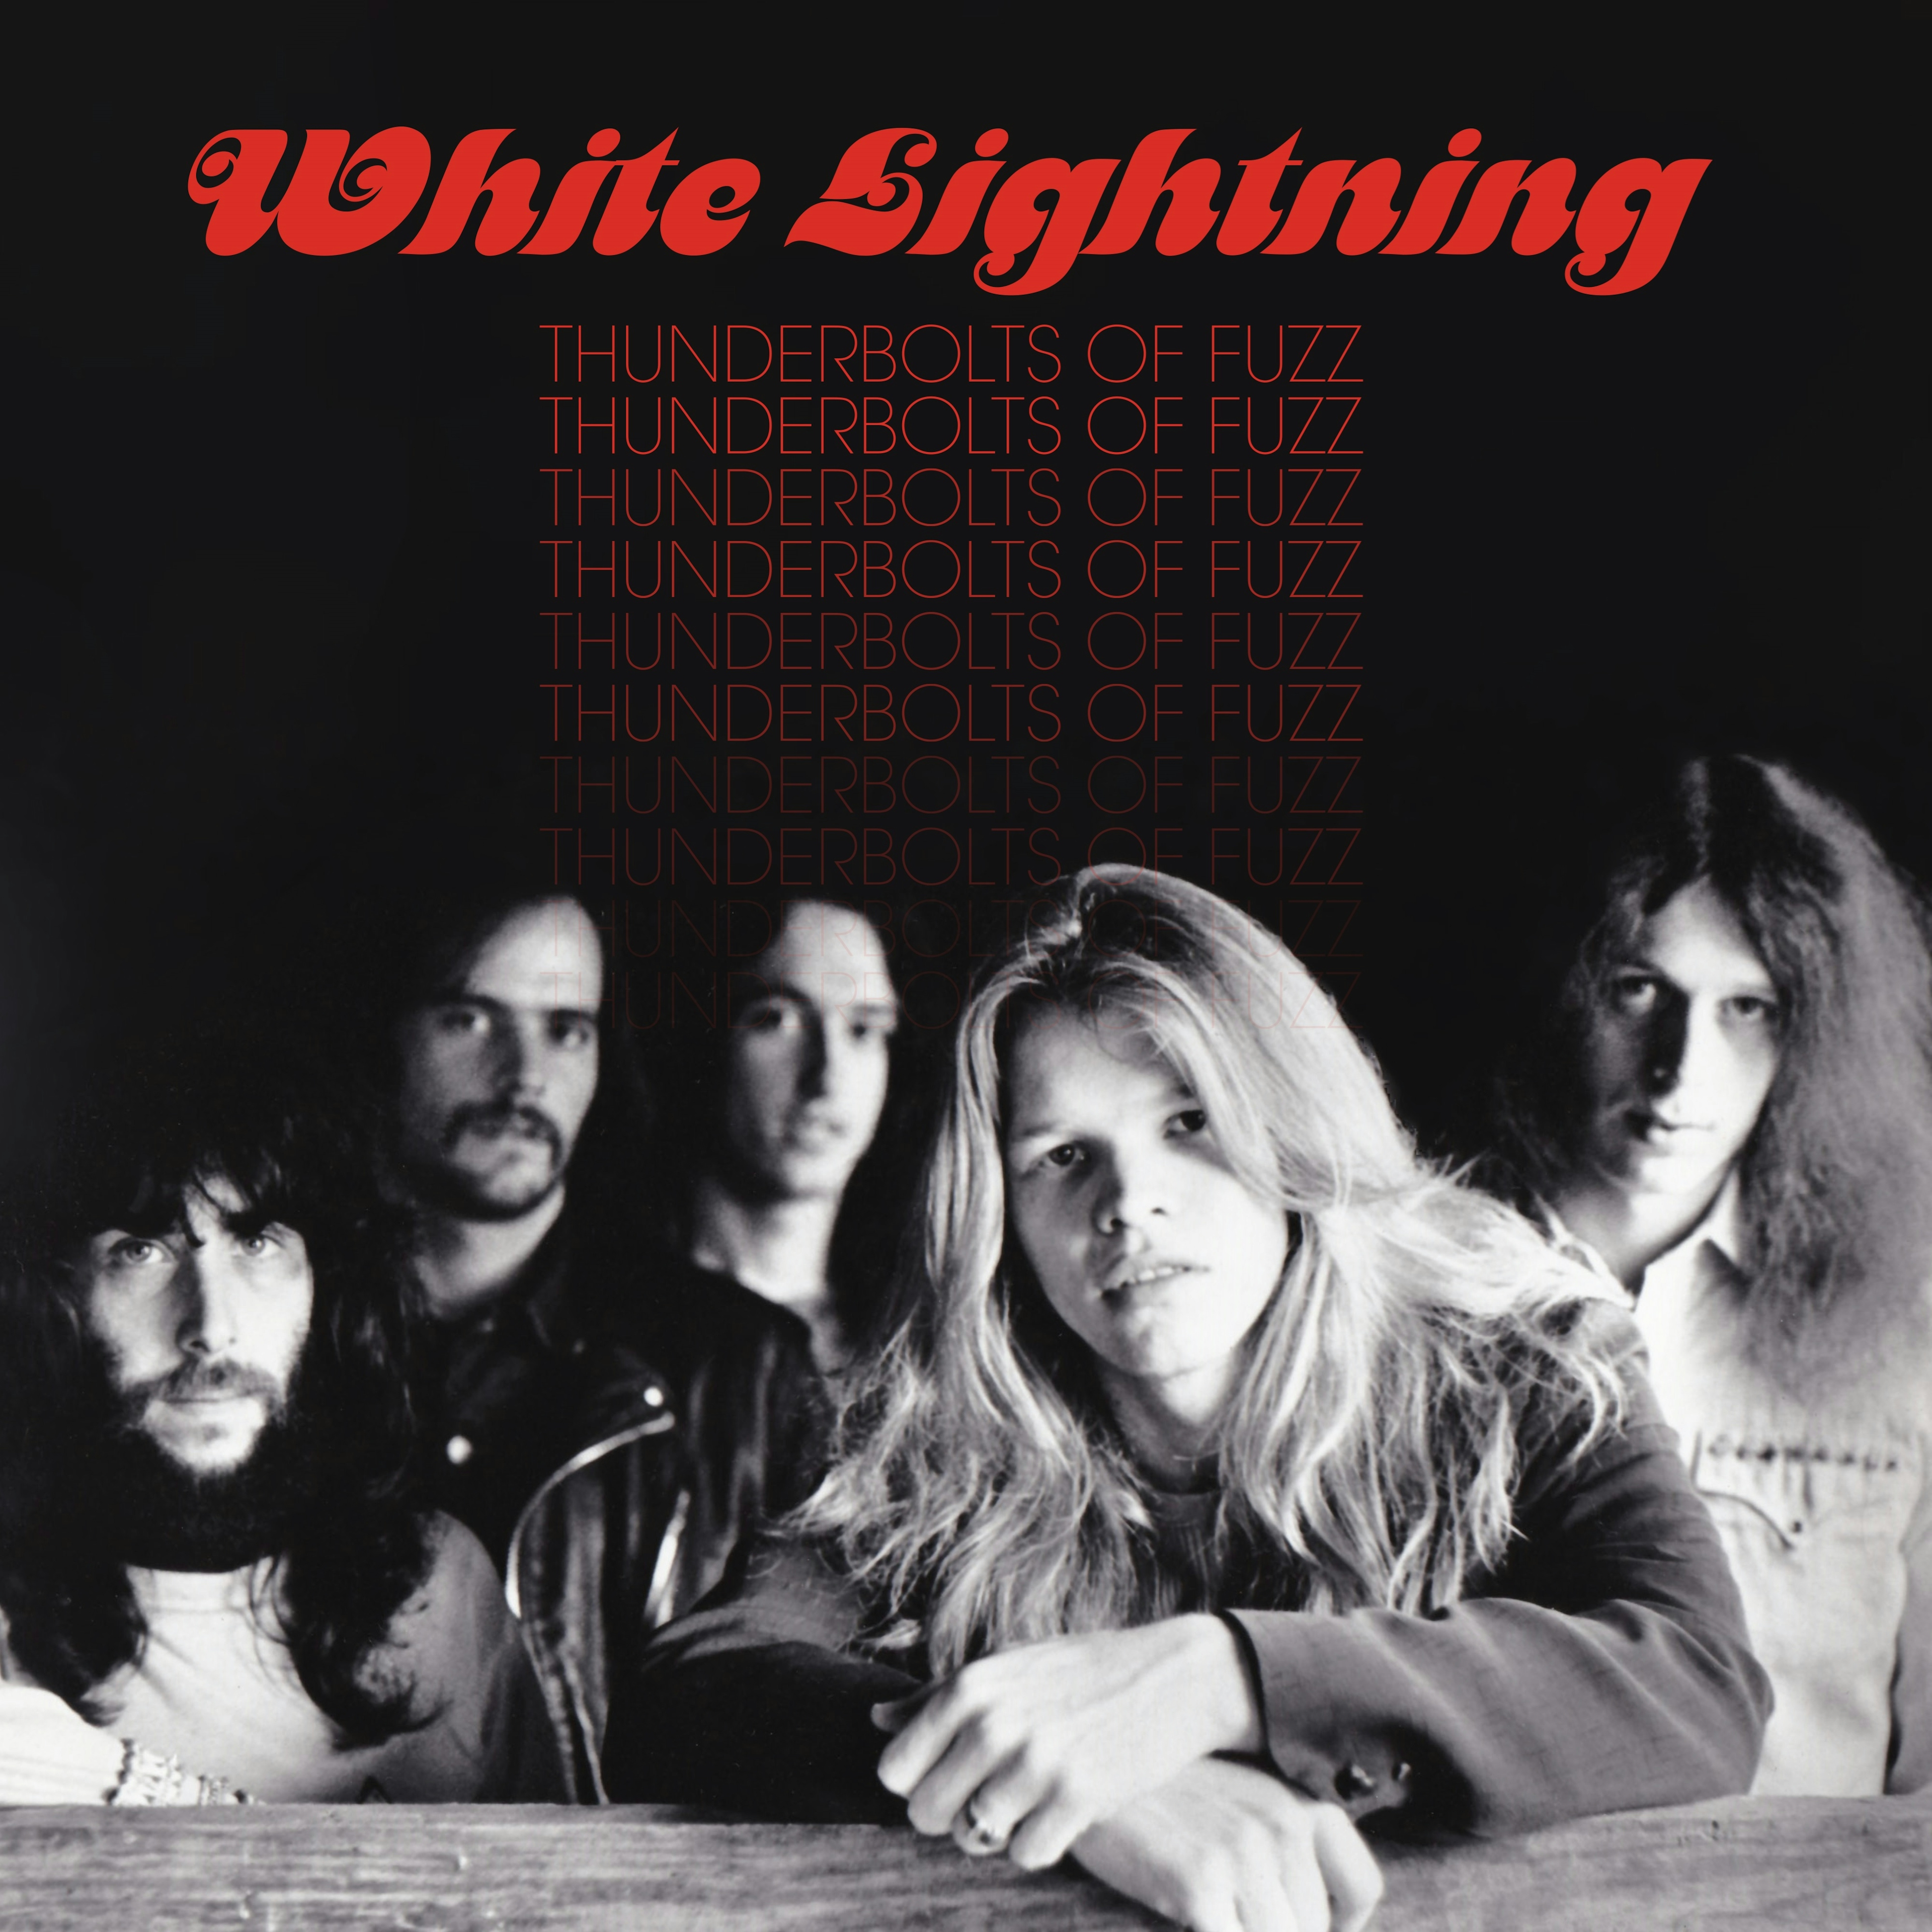 Album artwork for Album artwork for Thunderbolts of Jazz by White Lightning by Thunderbolts of Jazz - White Lightning